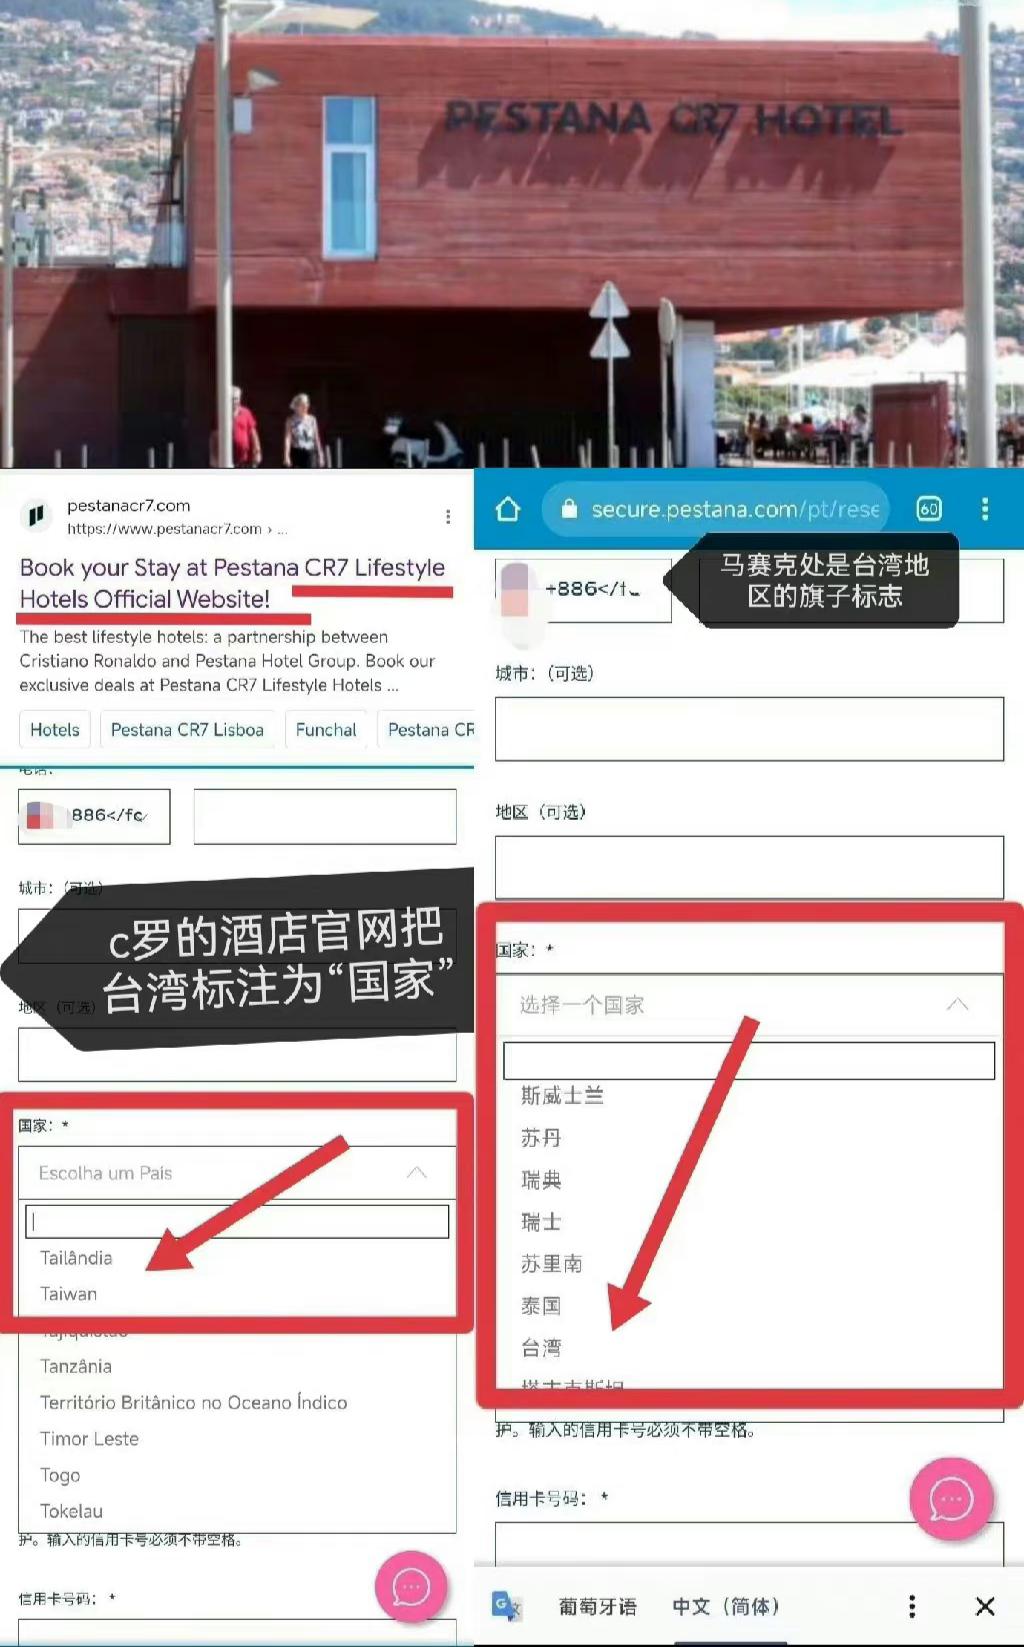 梅西店铺将台湾列为国家，C罗酒店将台湾列为国家，粉丝间的大战(2)